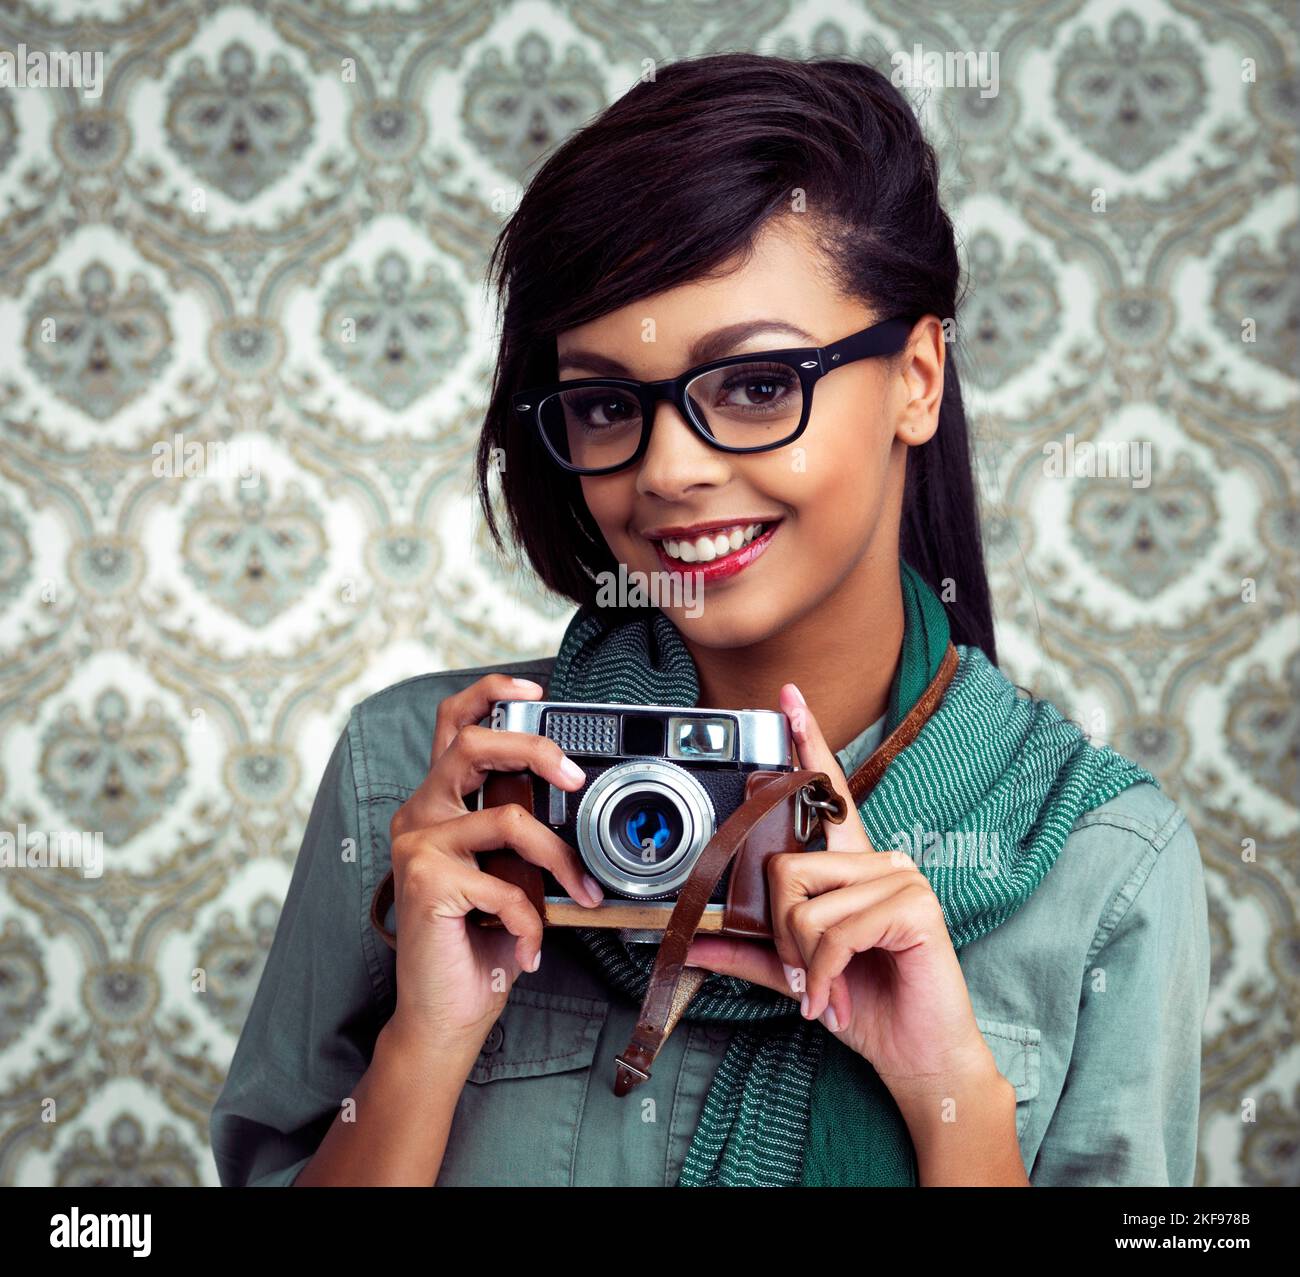 Jeden Moment festhalten. Eine junge Frau, die mit einer Kamera auf einem gemusterten Hintergrund posiert. Stockfoto